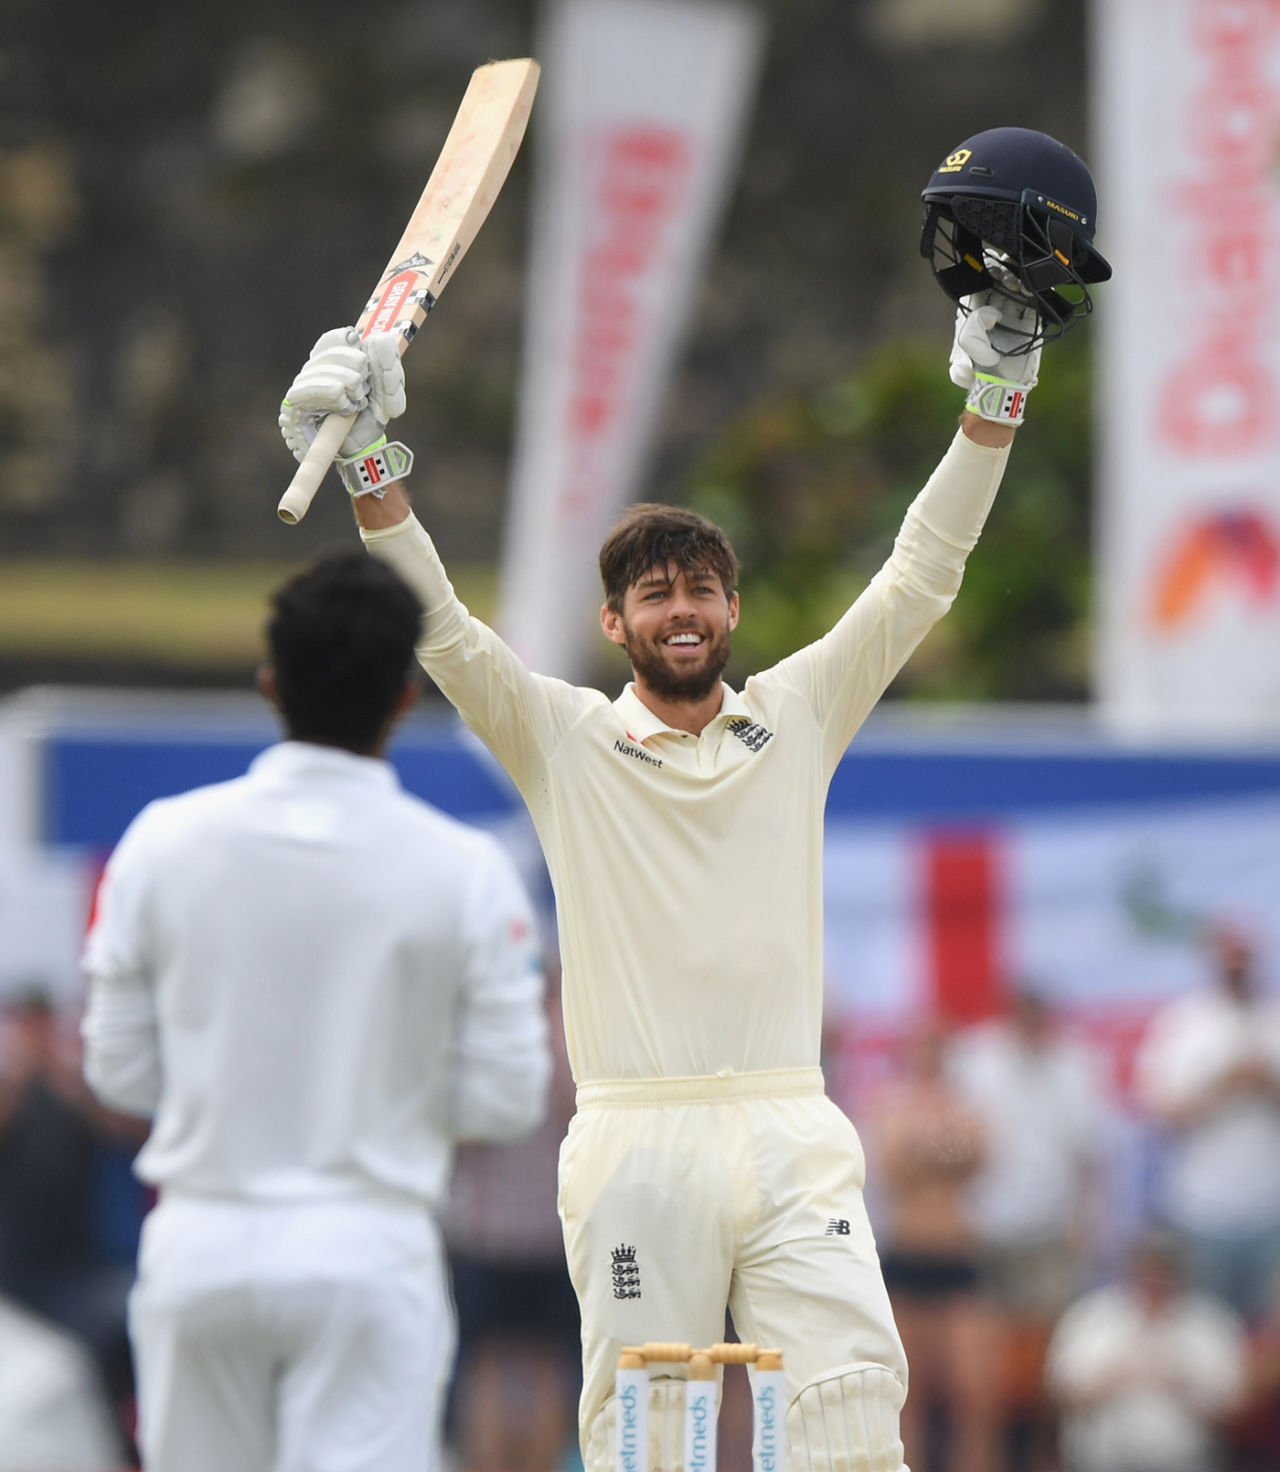 Ben Foakes celebrates his maiden Test hundred, Sri Lanka v England, 1st Test, Galle, 2nd day, November 7, 2018